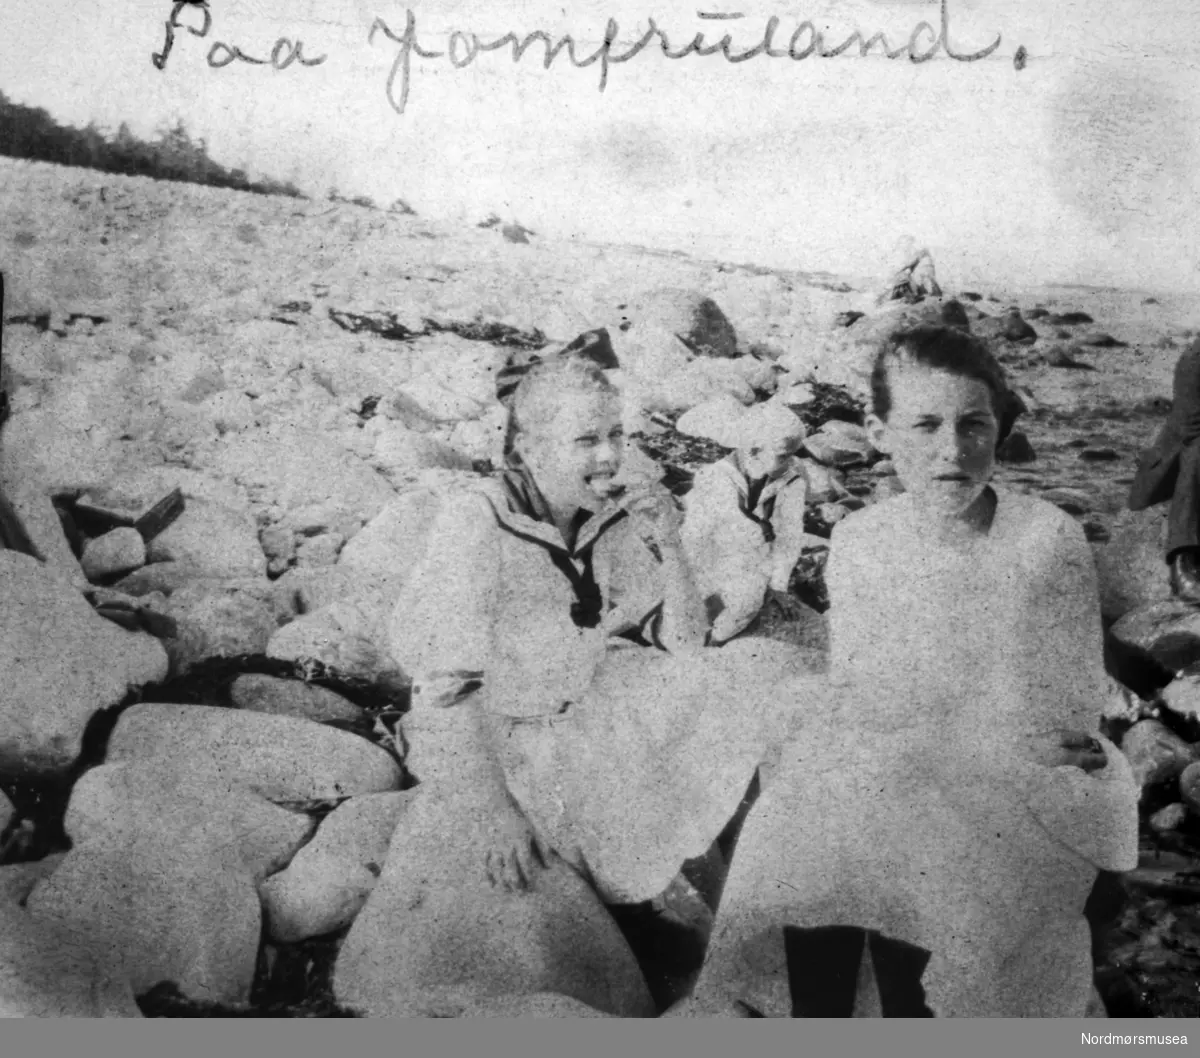 "Paa Jomfuland." Fra et fotoalbum tilhørende Ellinor Williams-Phakdikun (1905-1963). Kan være fra Kragerø. Fra Nordmøre museums fotosamlinger.